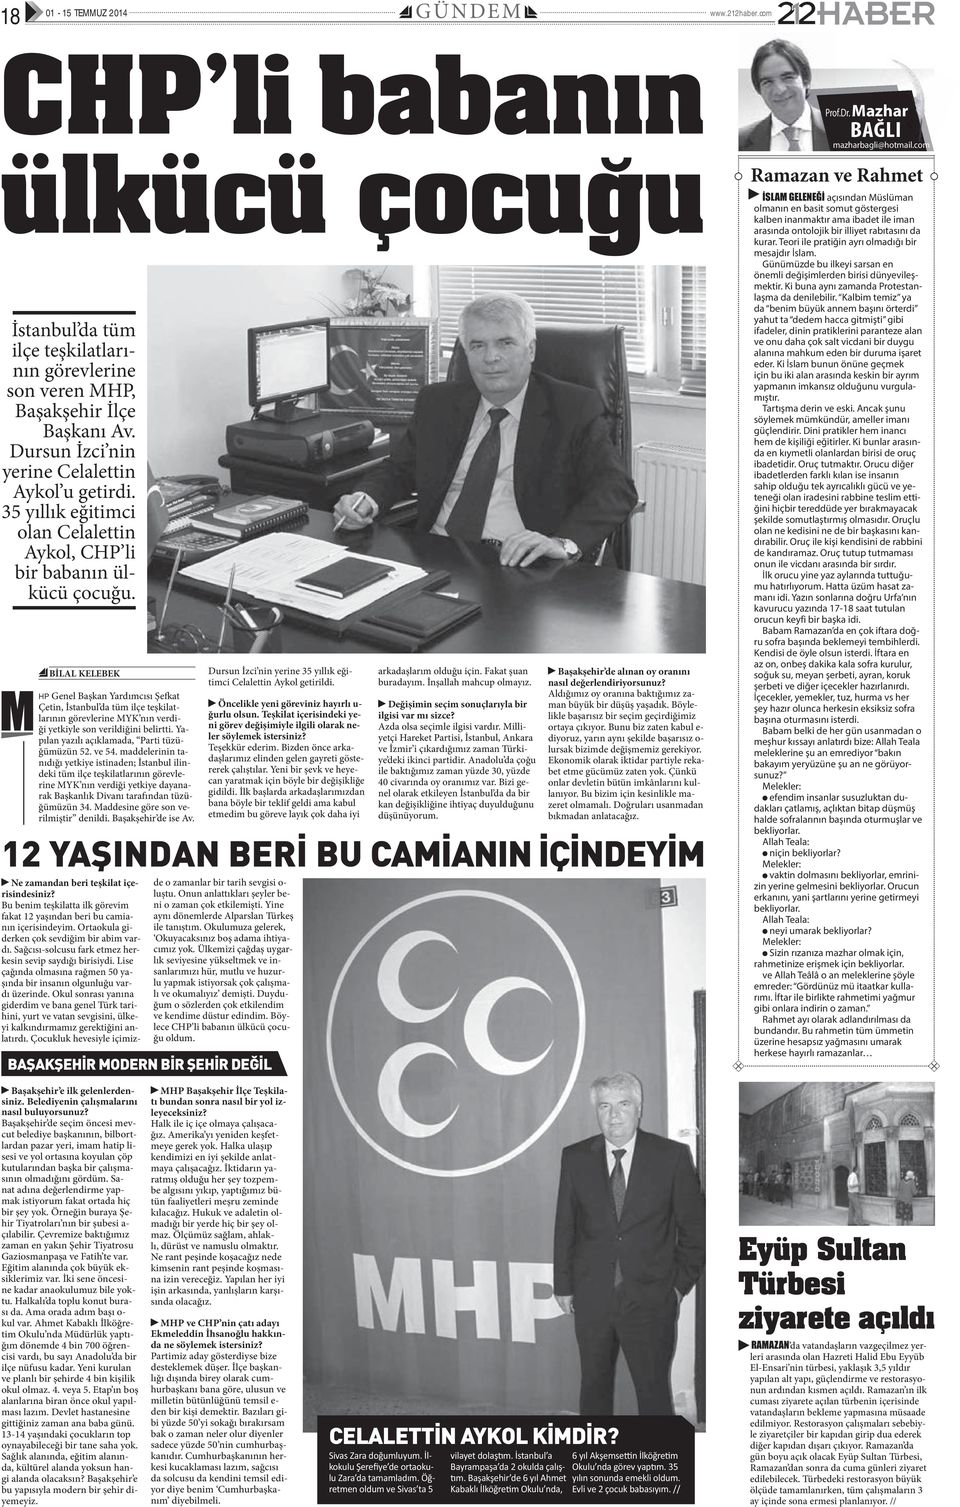 BİLAL KELEBEK HP Genel Başkan Yardımcısı Şefkat Çetin, İstanbul da tüm ilçe teşkilatlarının görevlerine MYK nın verdiği yetkiyle son verildiğini belirtti.